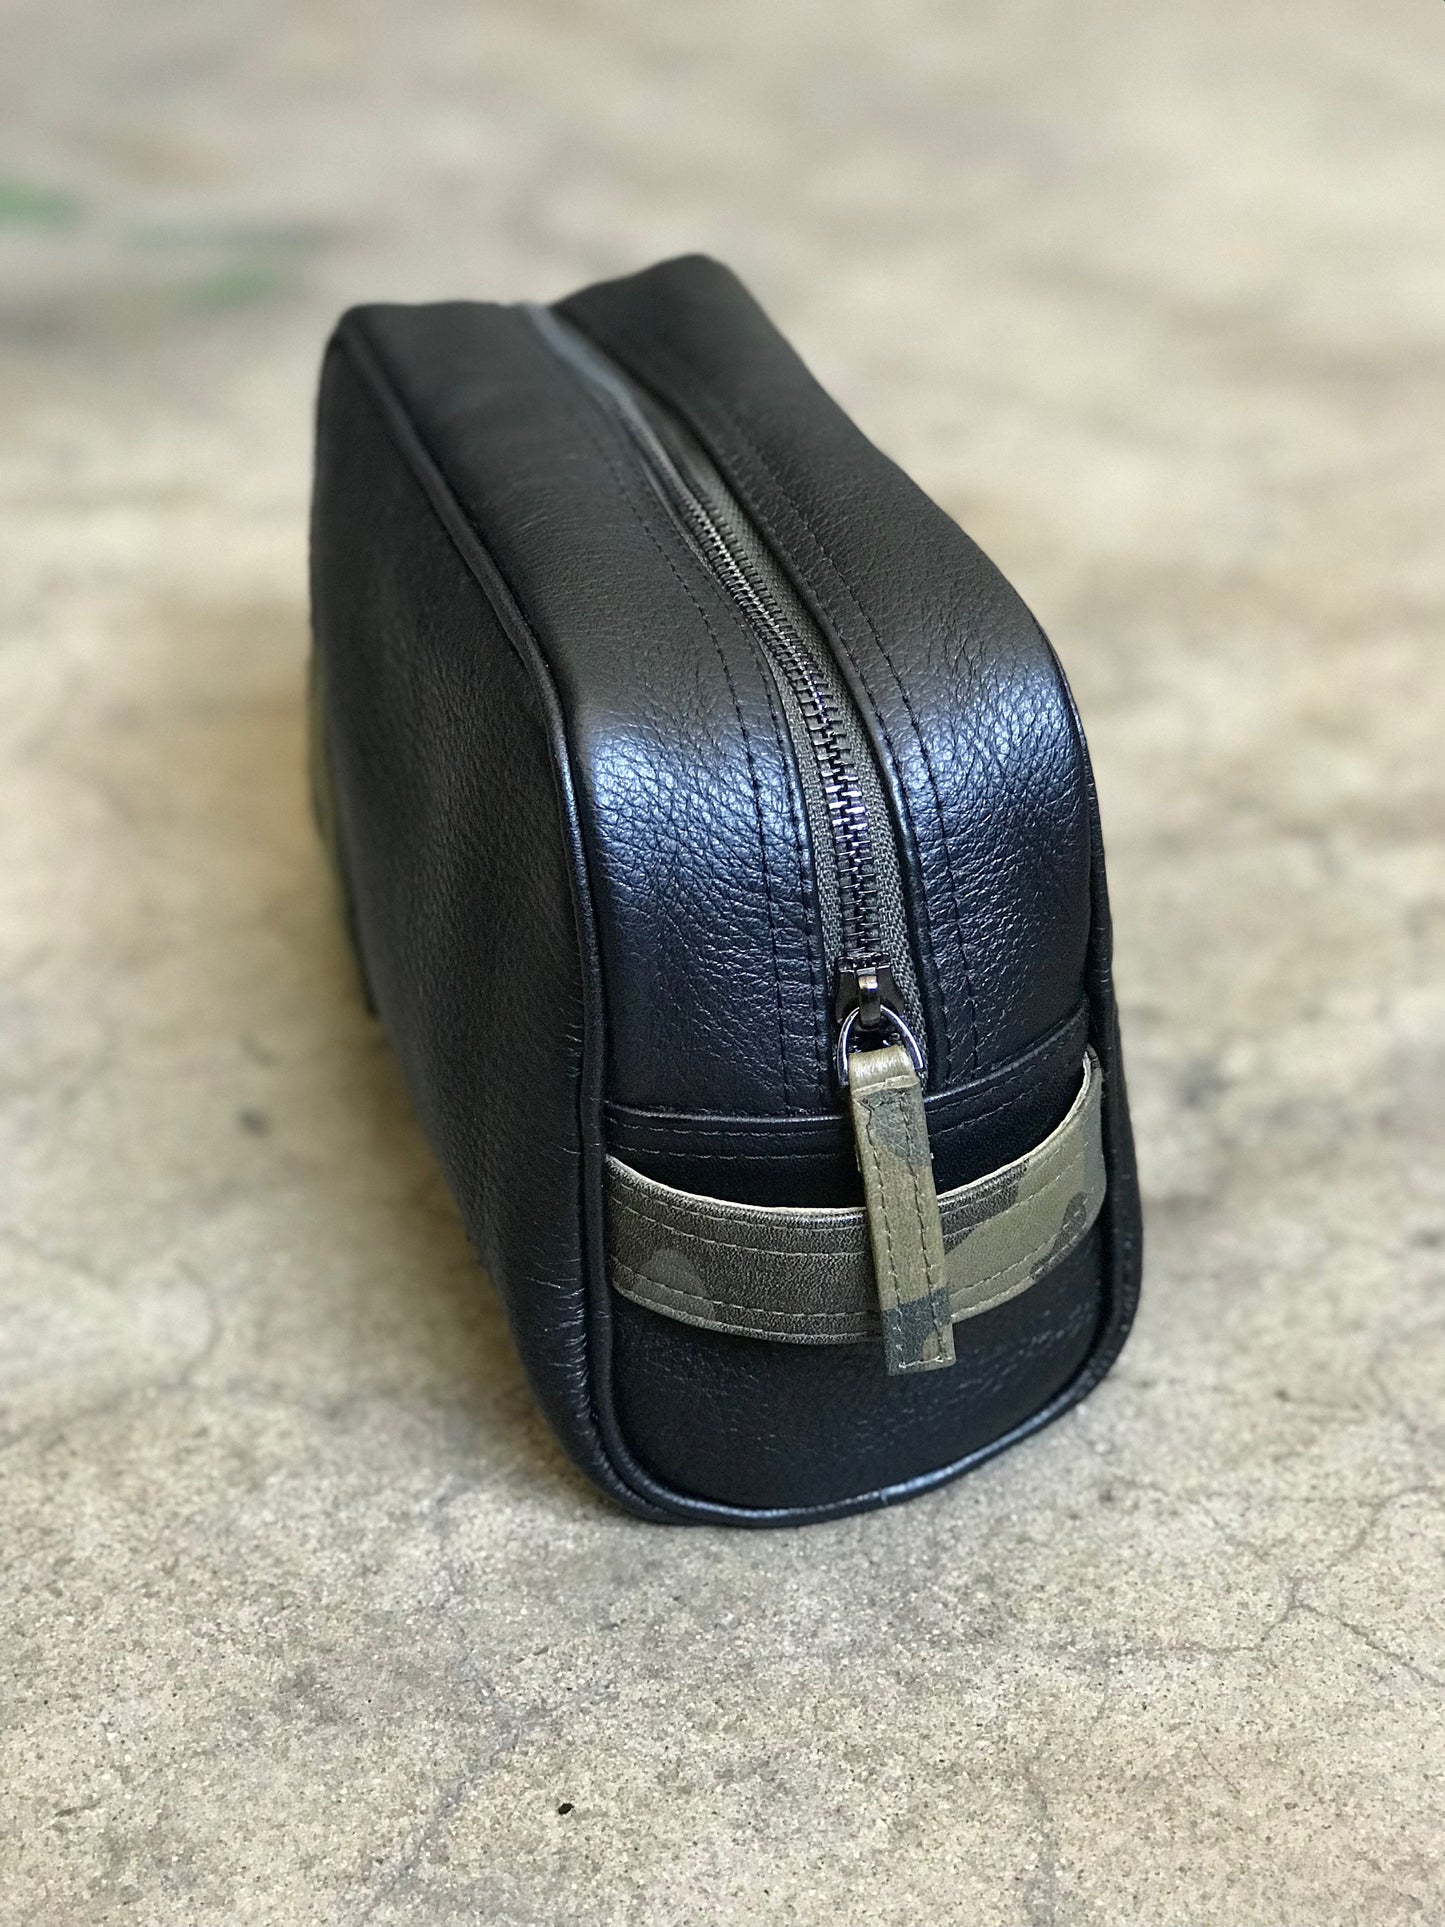 Snake Oil Leather COBRA KIT Toiletry Bag and Travel Kit